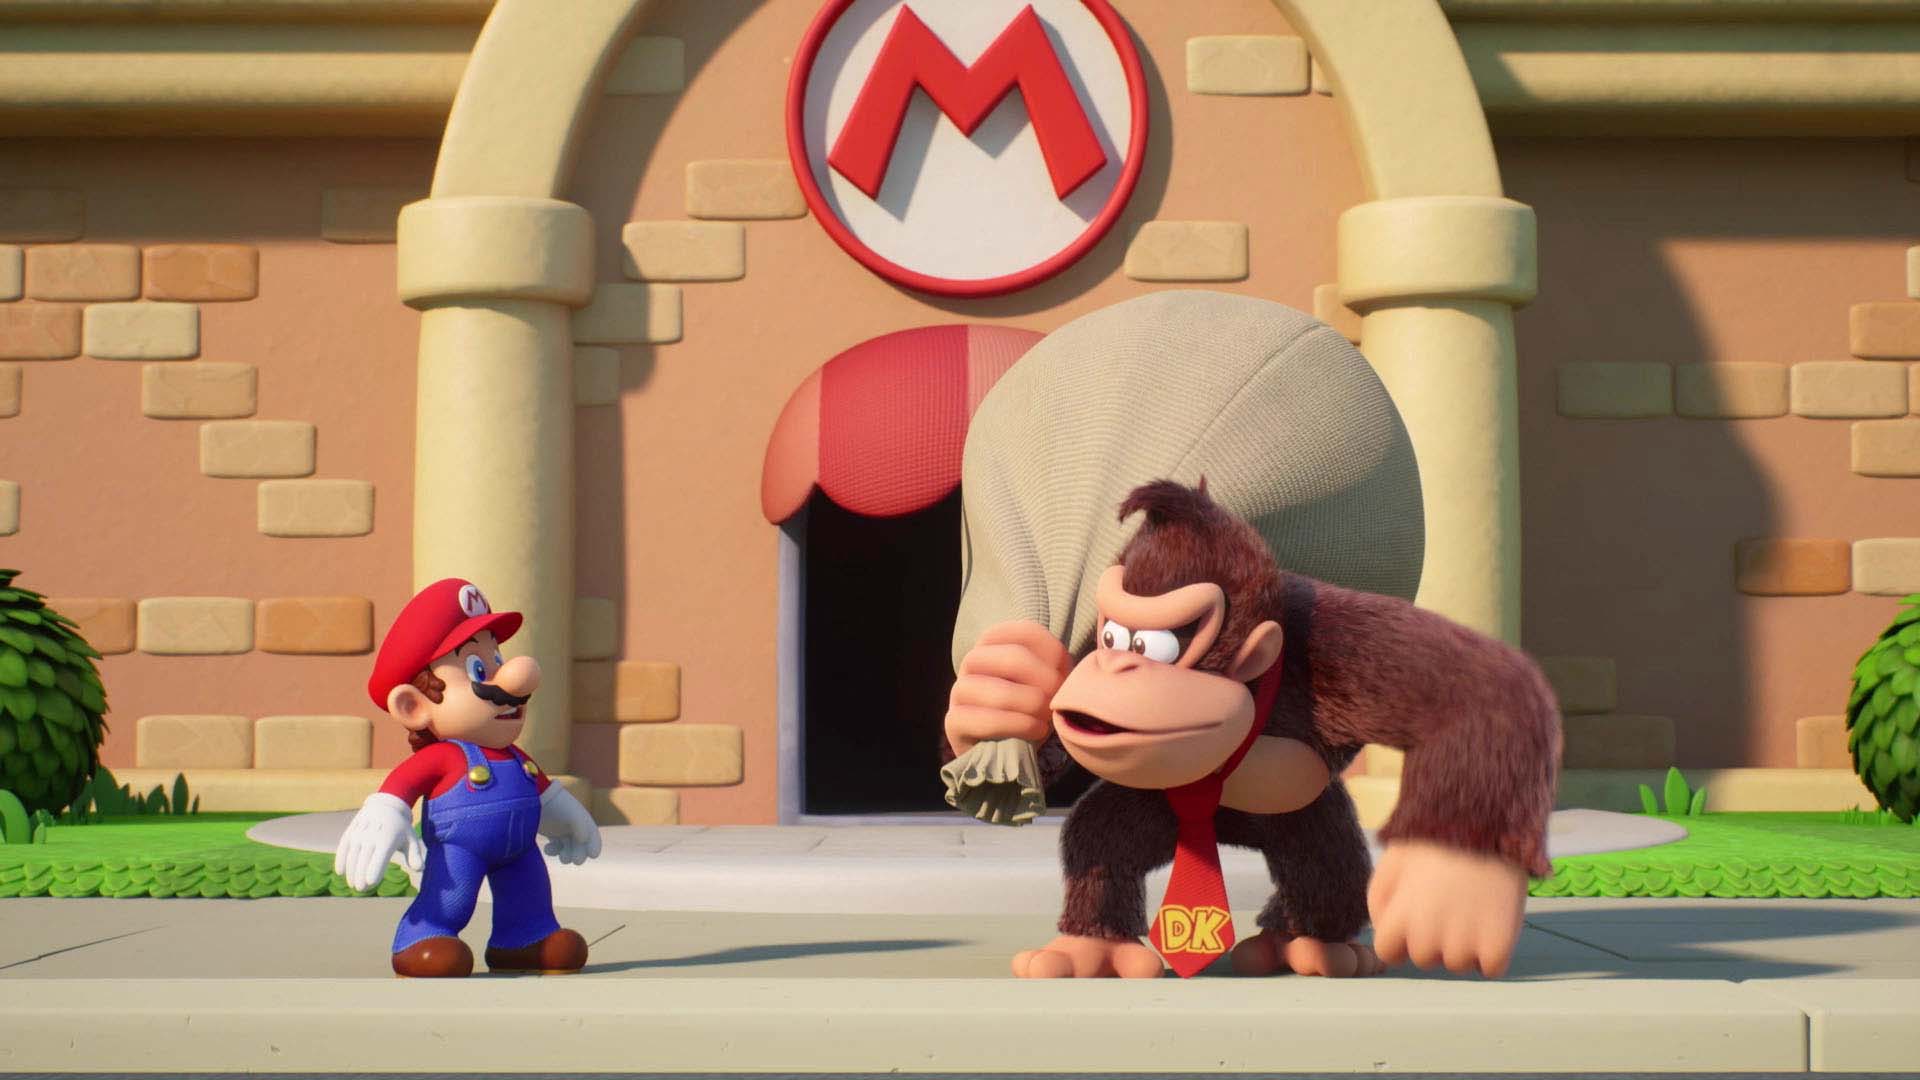 Mario vs Donkey Kong: Tipping Stars Review